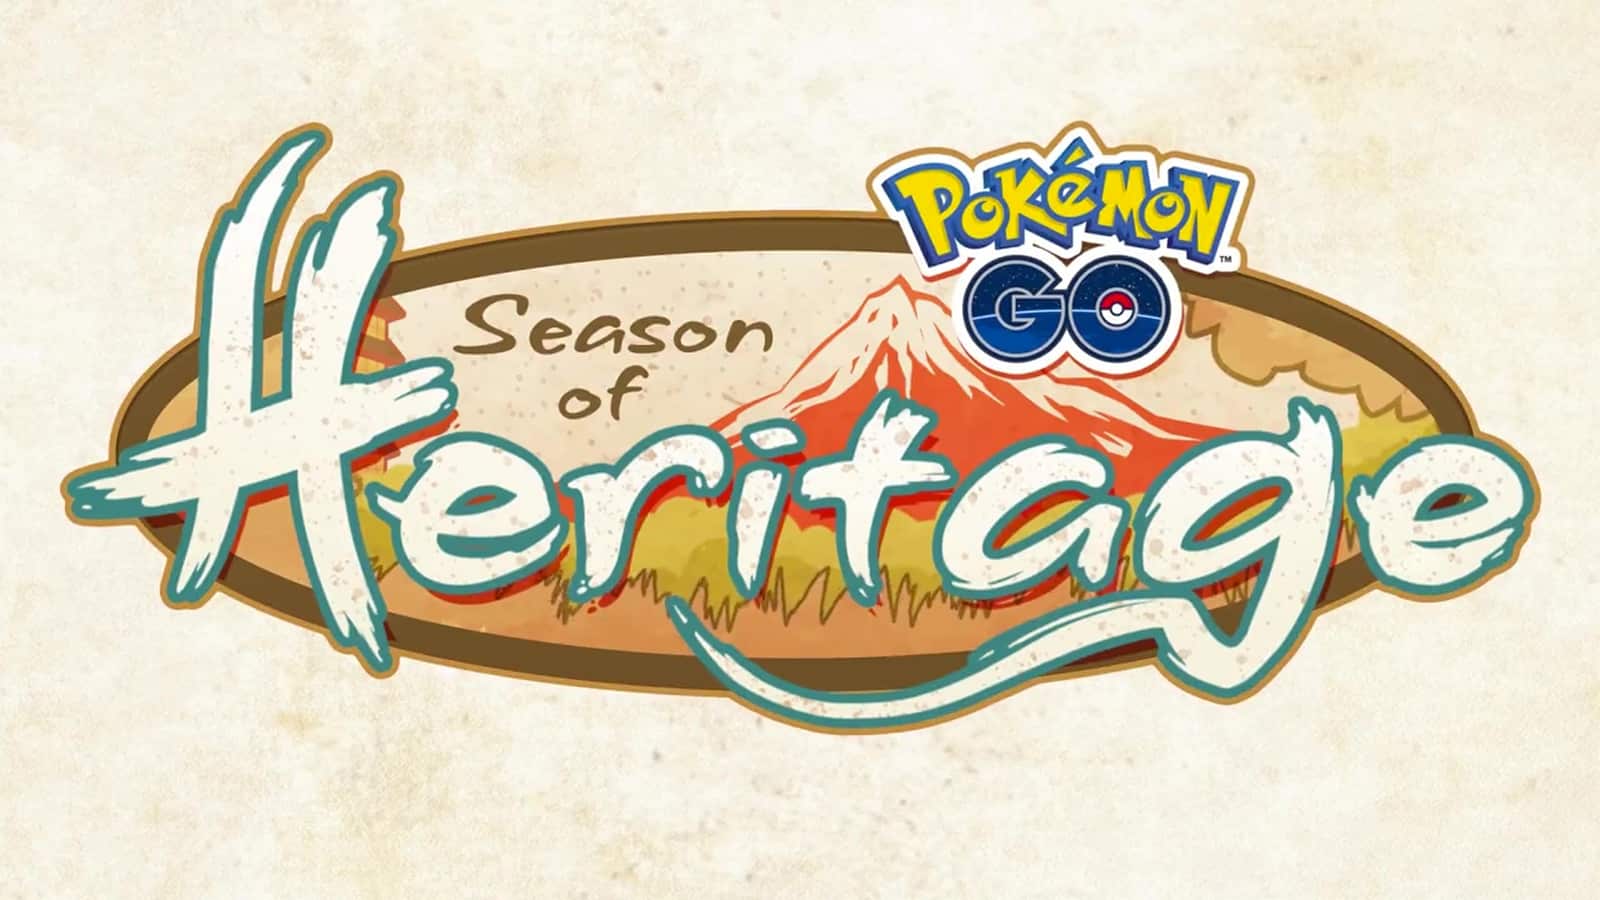 The Season of Heritage logo in Pokemon Go